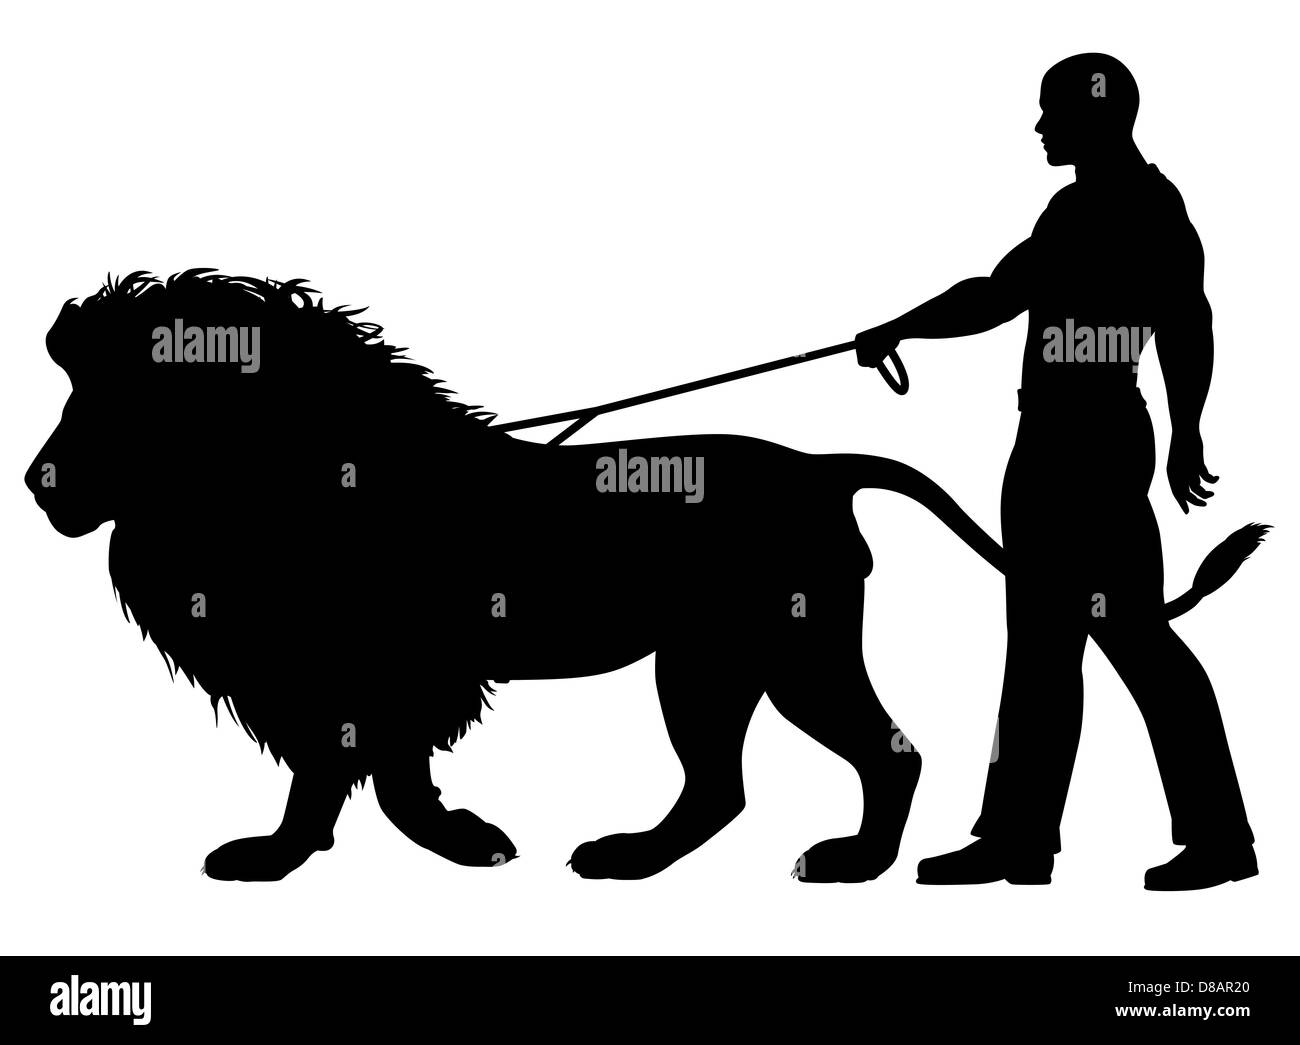 Illustriert die Silhouette eines Mannes zu Fuß einen Löwen an der Leine Stockfoto